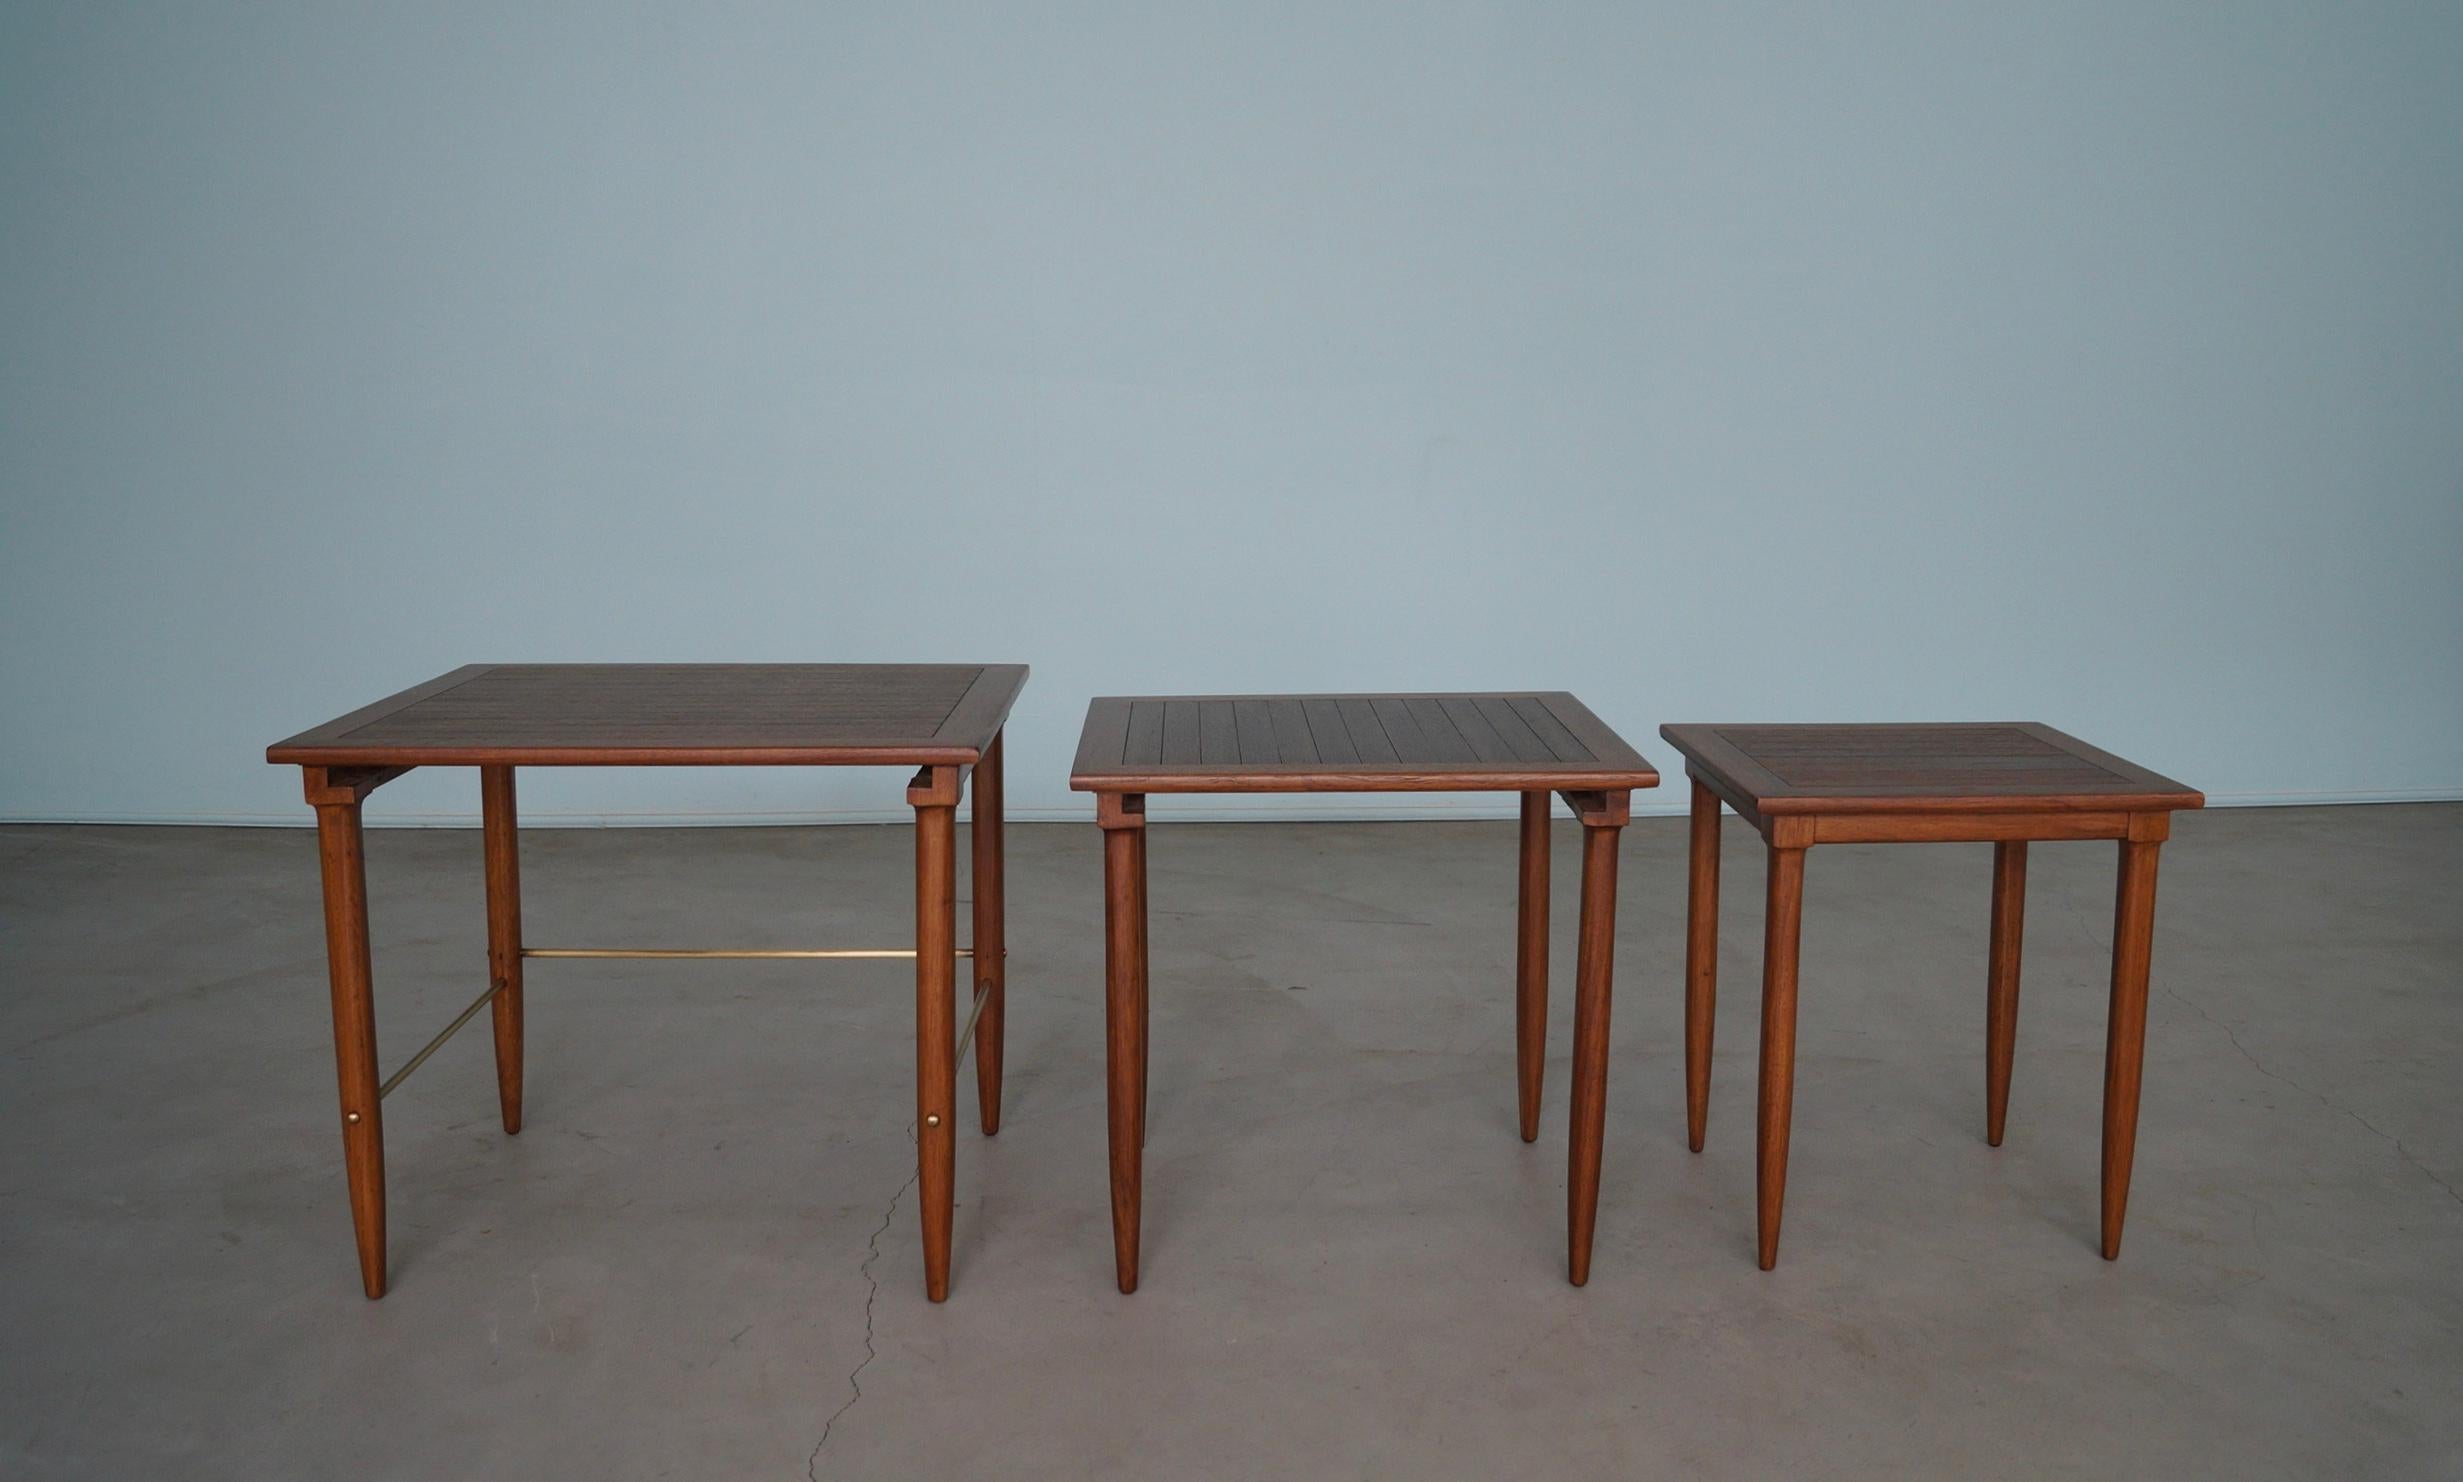 Wir haben eine schöne Reihe von original 1950er Mid-Century Modern Verschachtelung Tabellen zum Verkauf. Sie wurden von Tomlinson Sophisticate hergestellt und sind hochwertige Designerstücke aus dieser Zeit. Sie sind aus Mahagoni und wurden